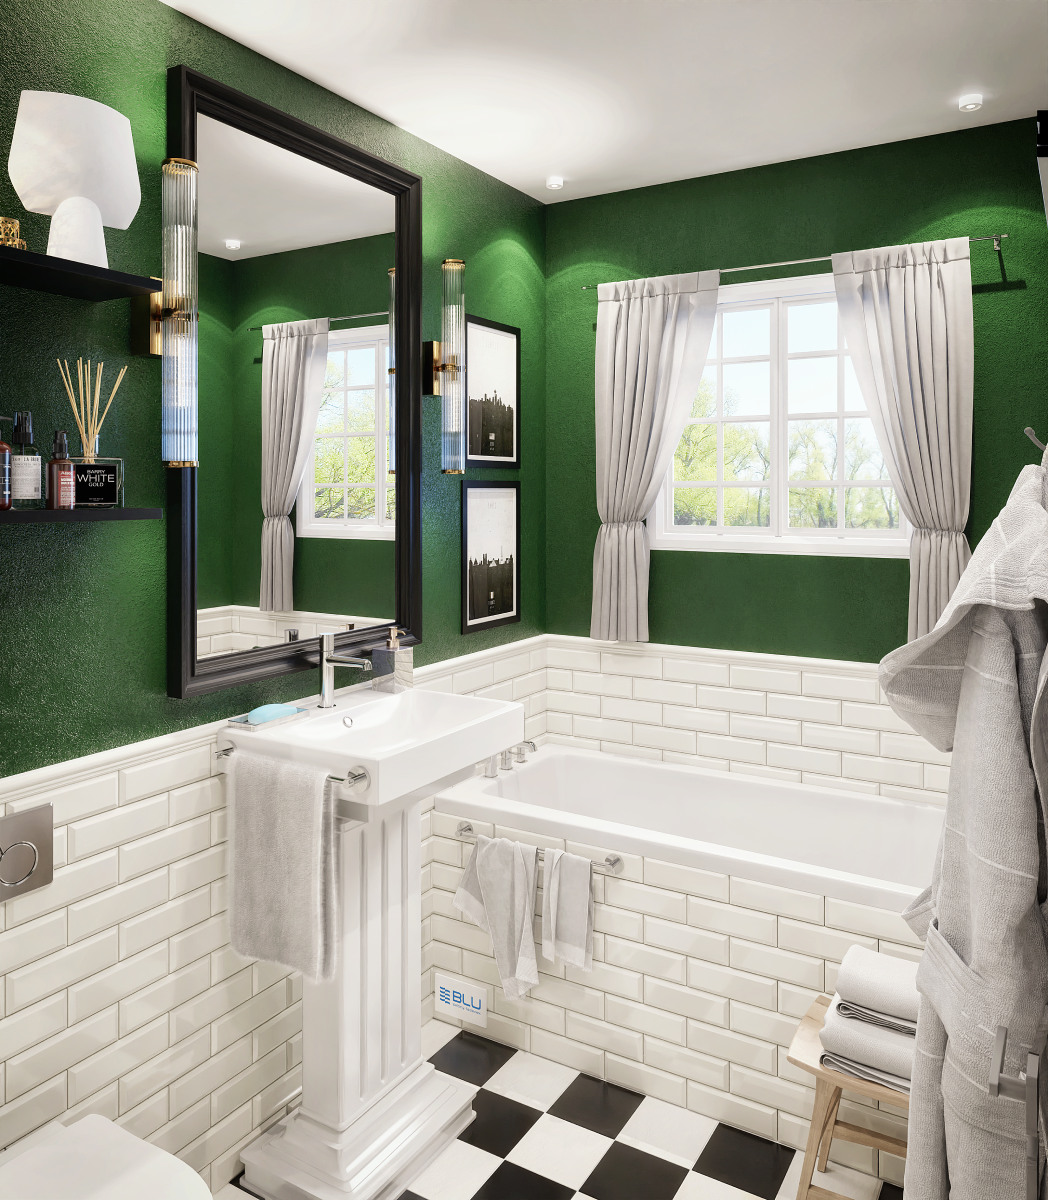 Biało - zielona łazienka w stylu retro.